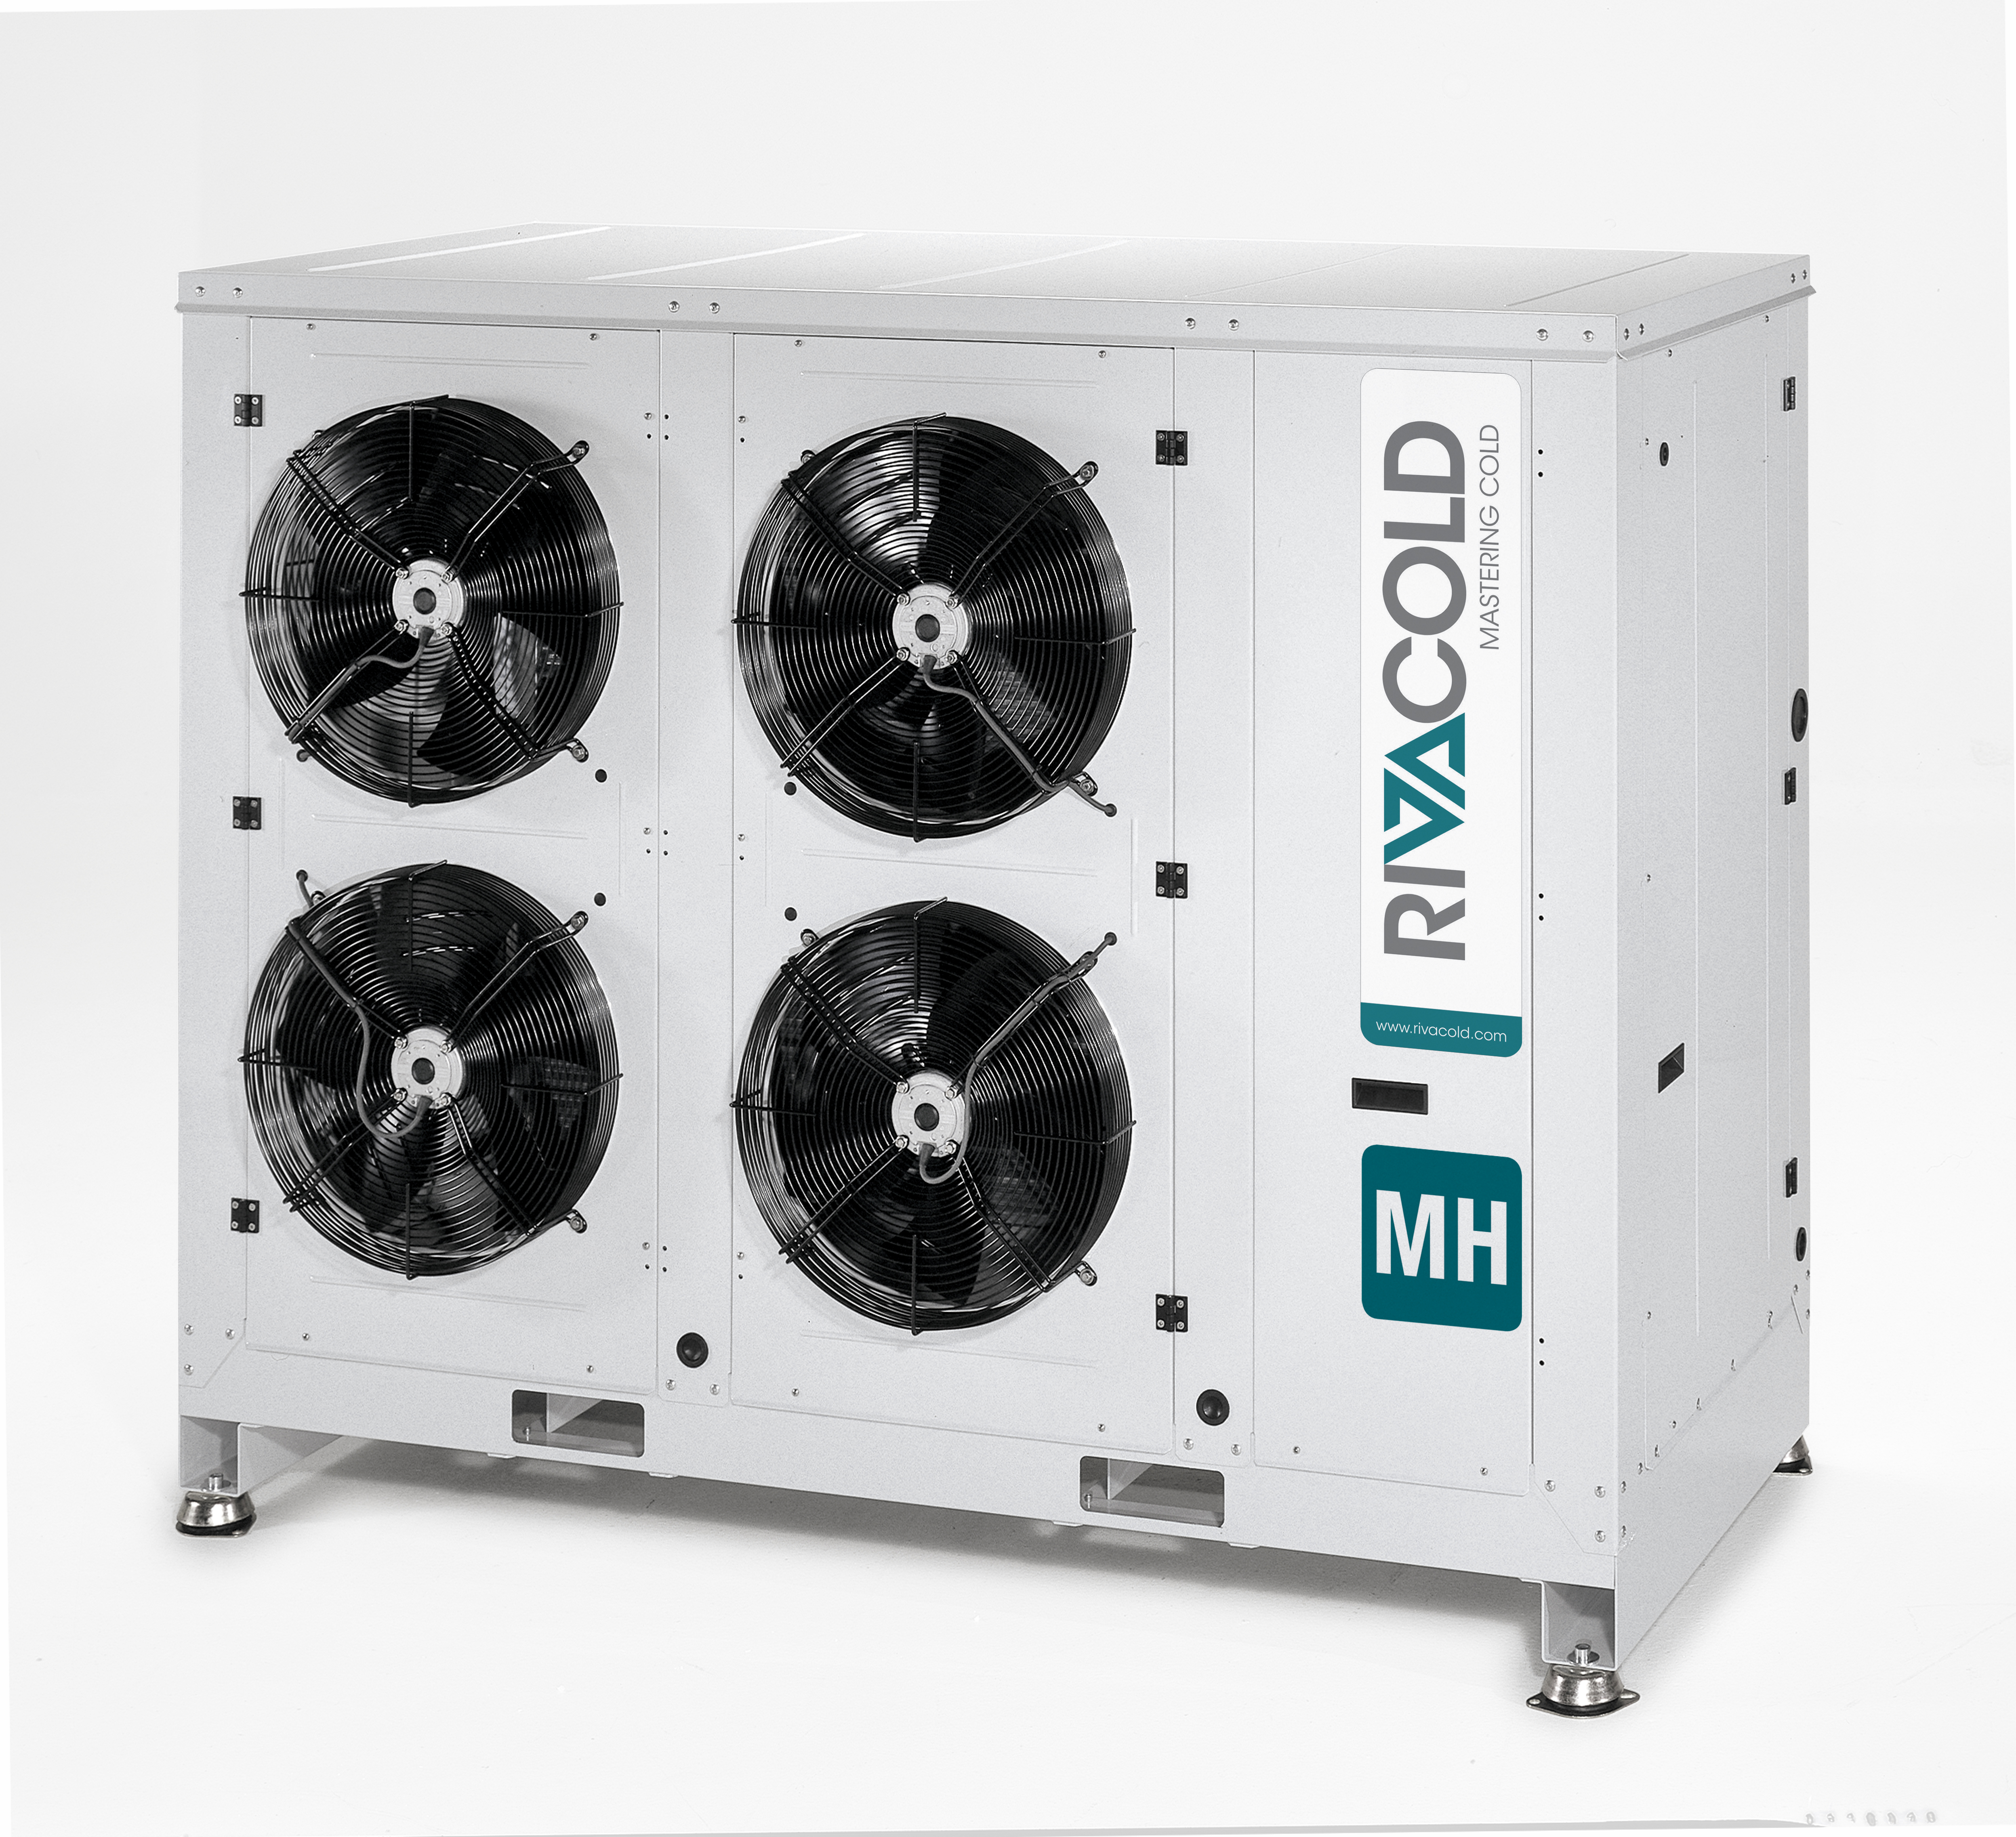 MH - Unités condensation avec carénage insonorisé et compresseur alternatif, semi hermétique et scroll